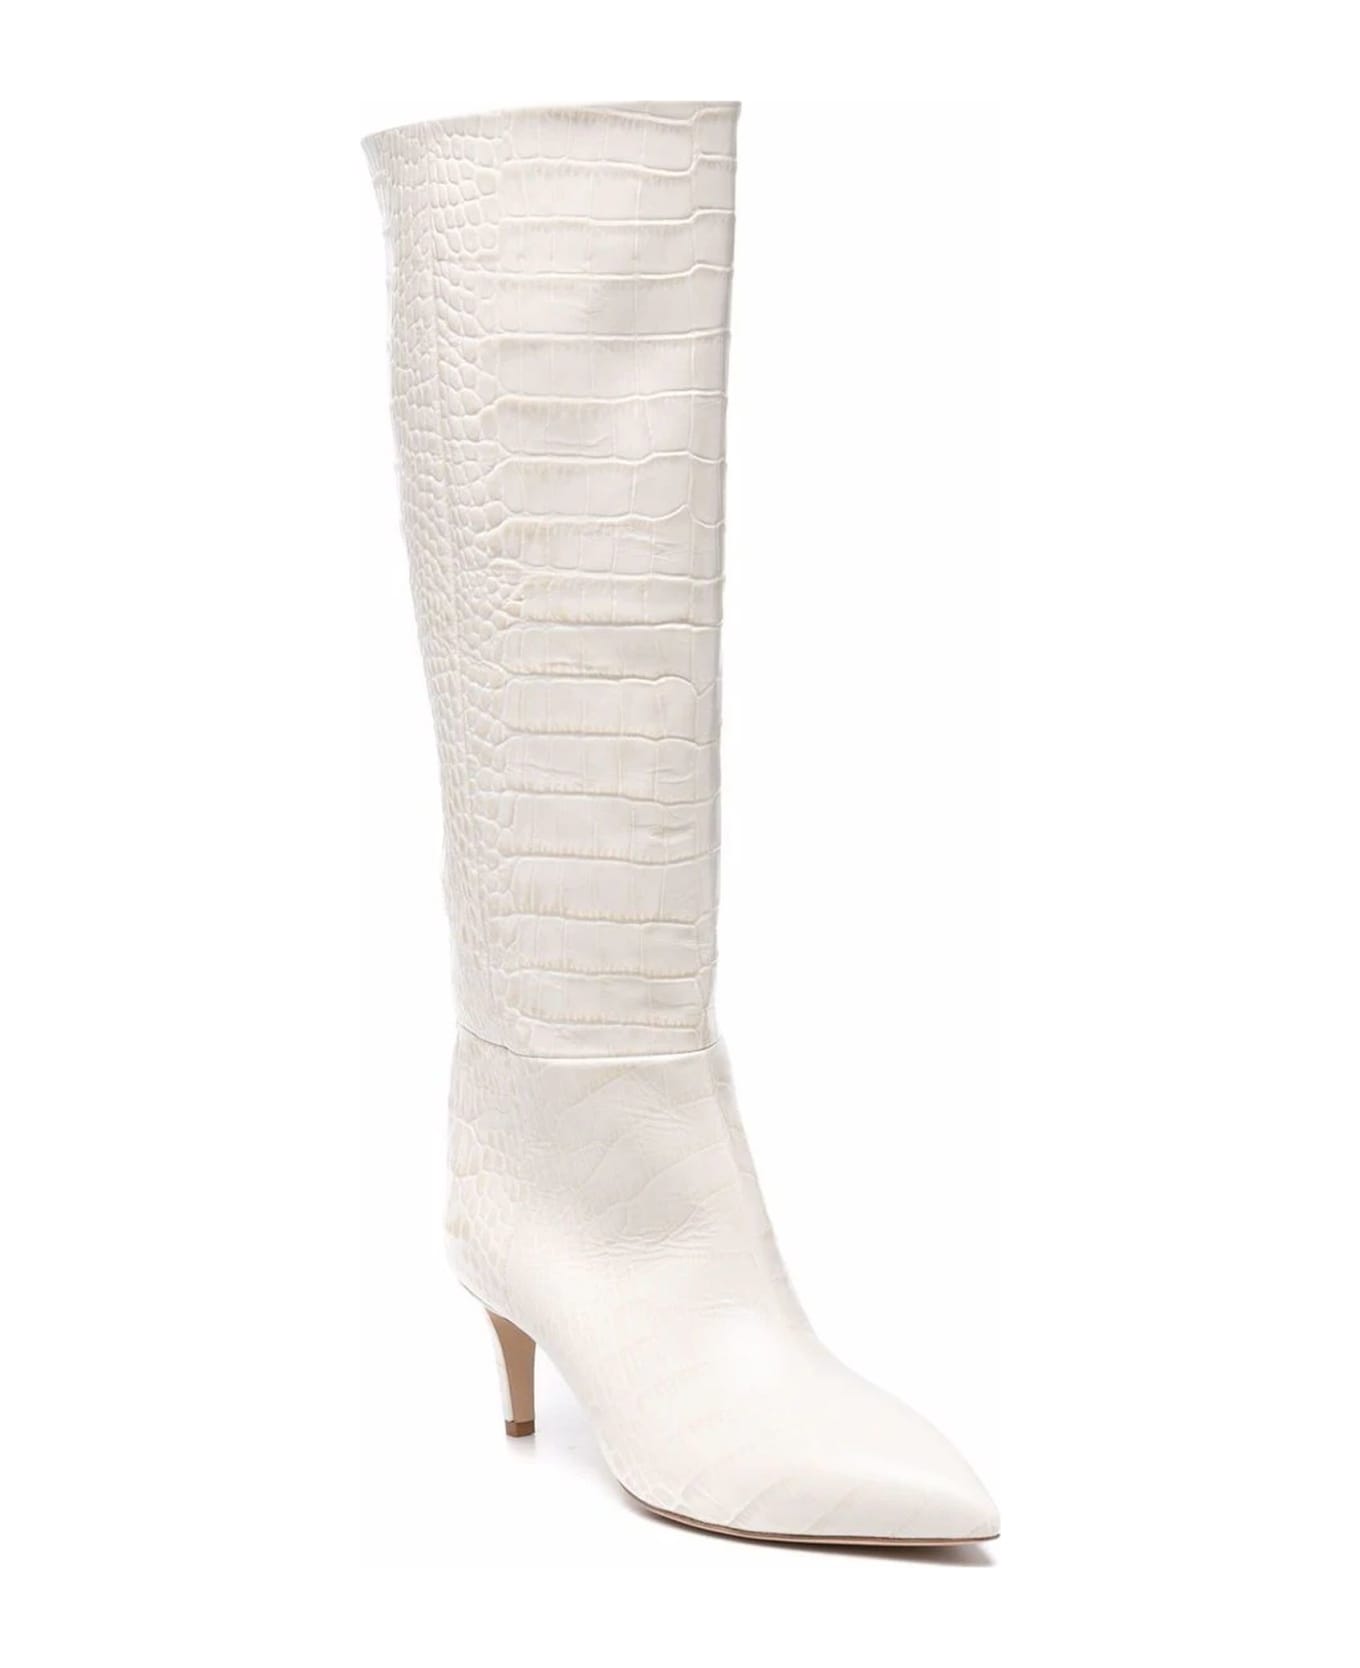 Paris Texas White Leather Croc-effect Stiletto Boots - White